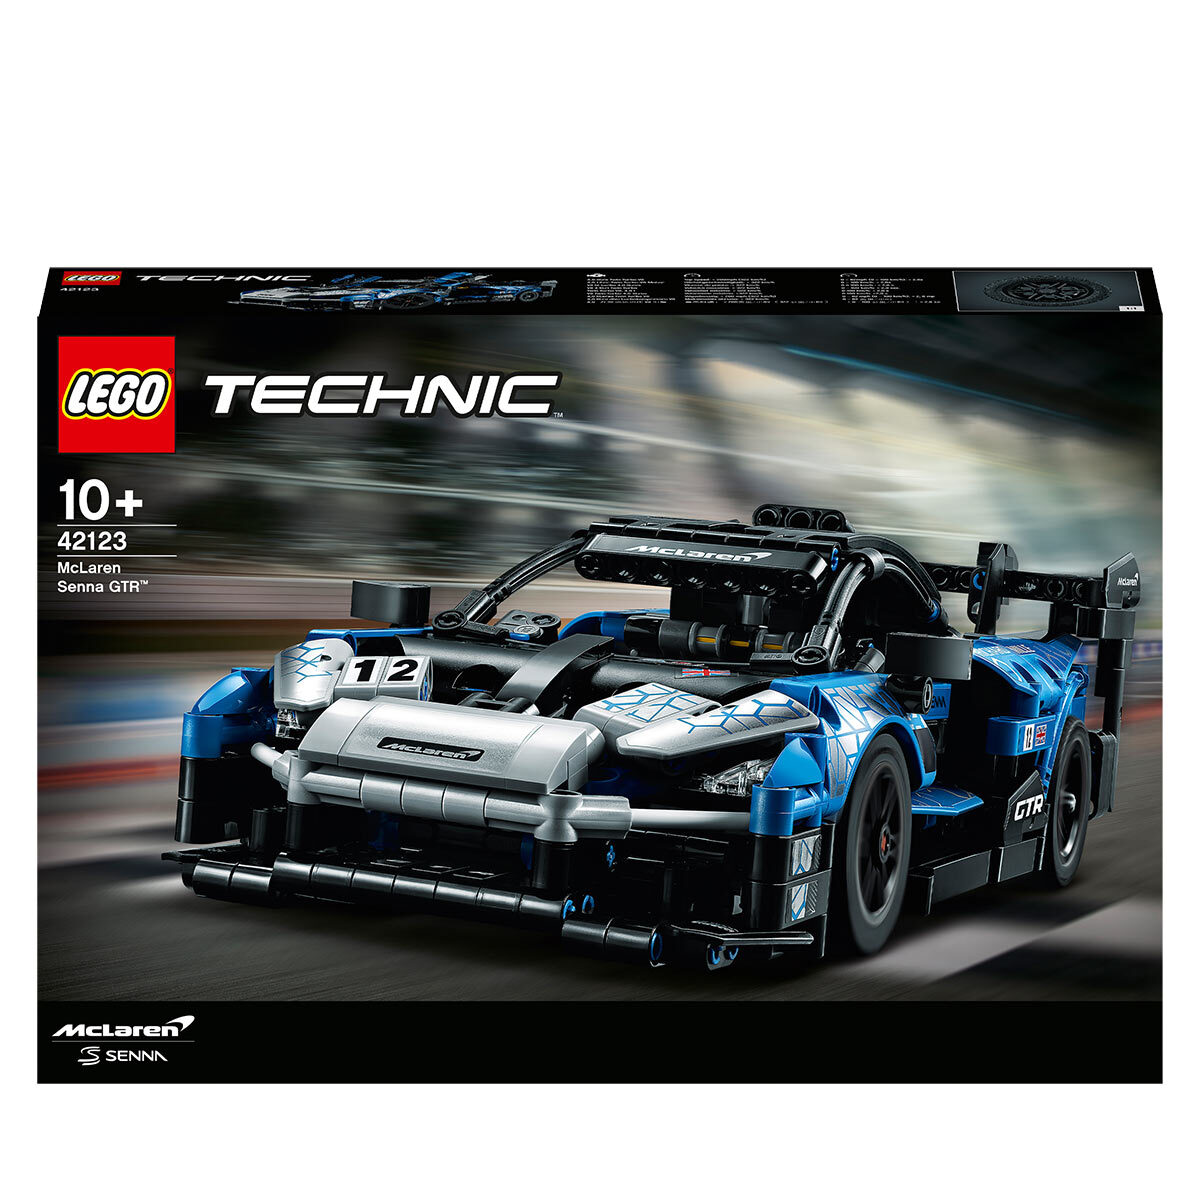 LEGO technic lifestyle image